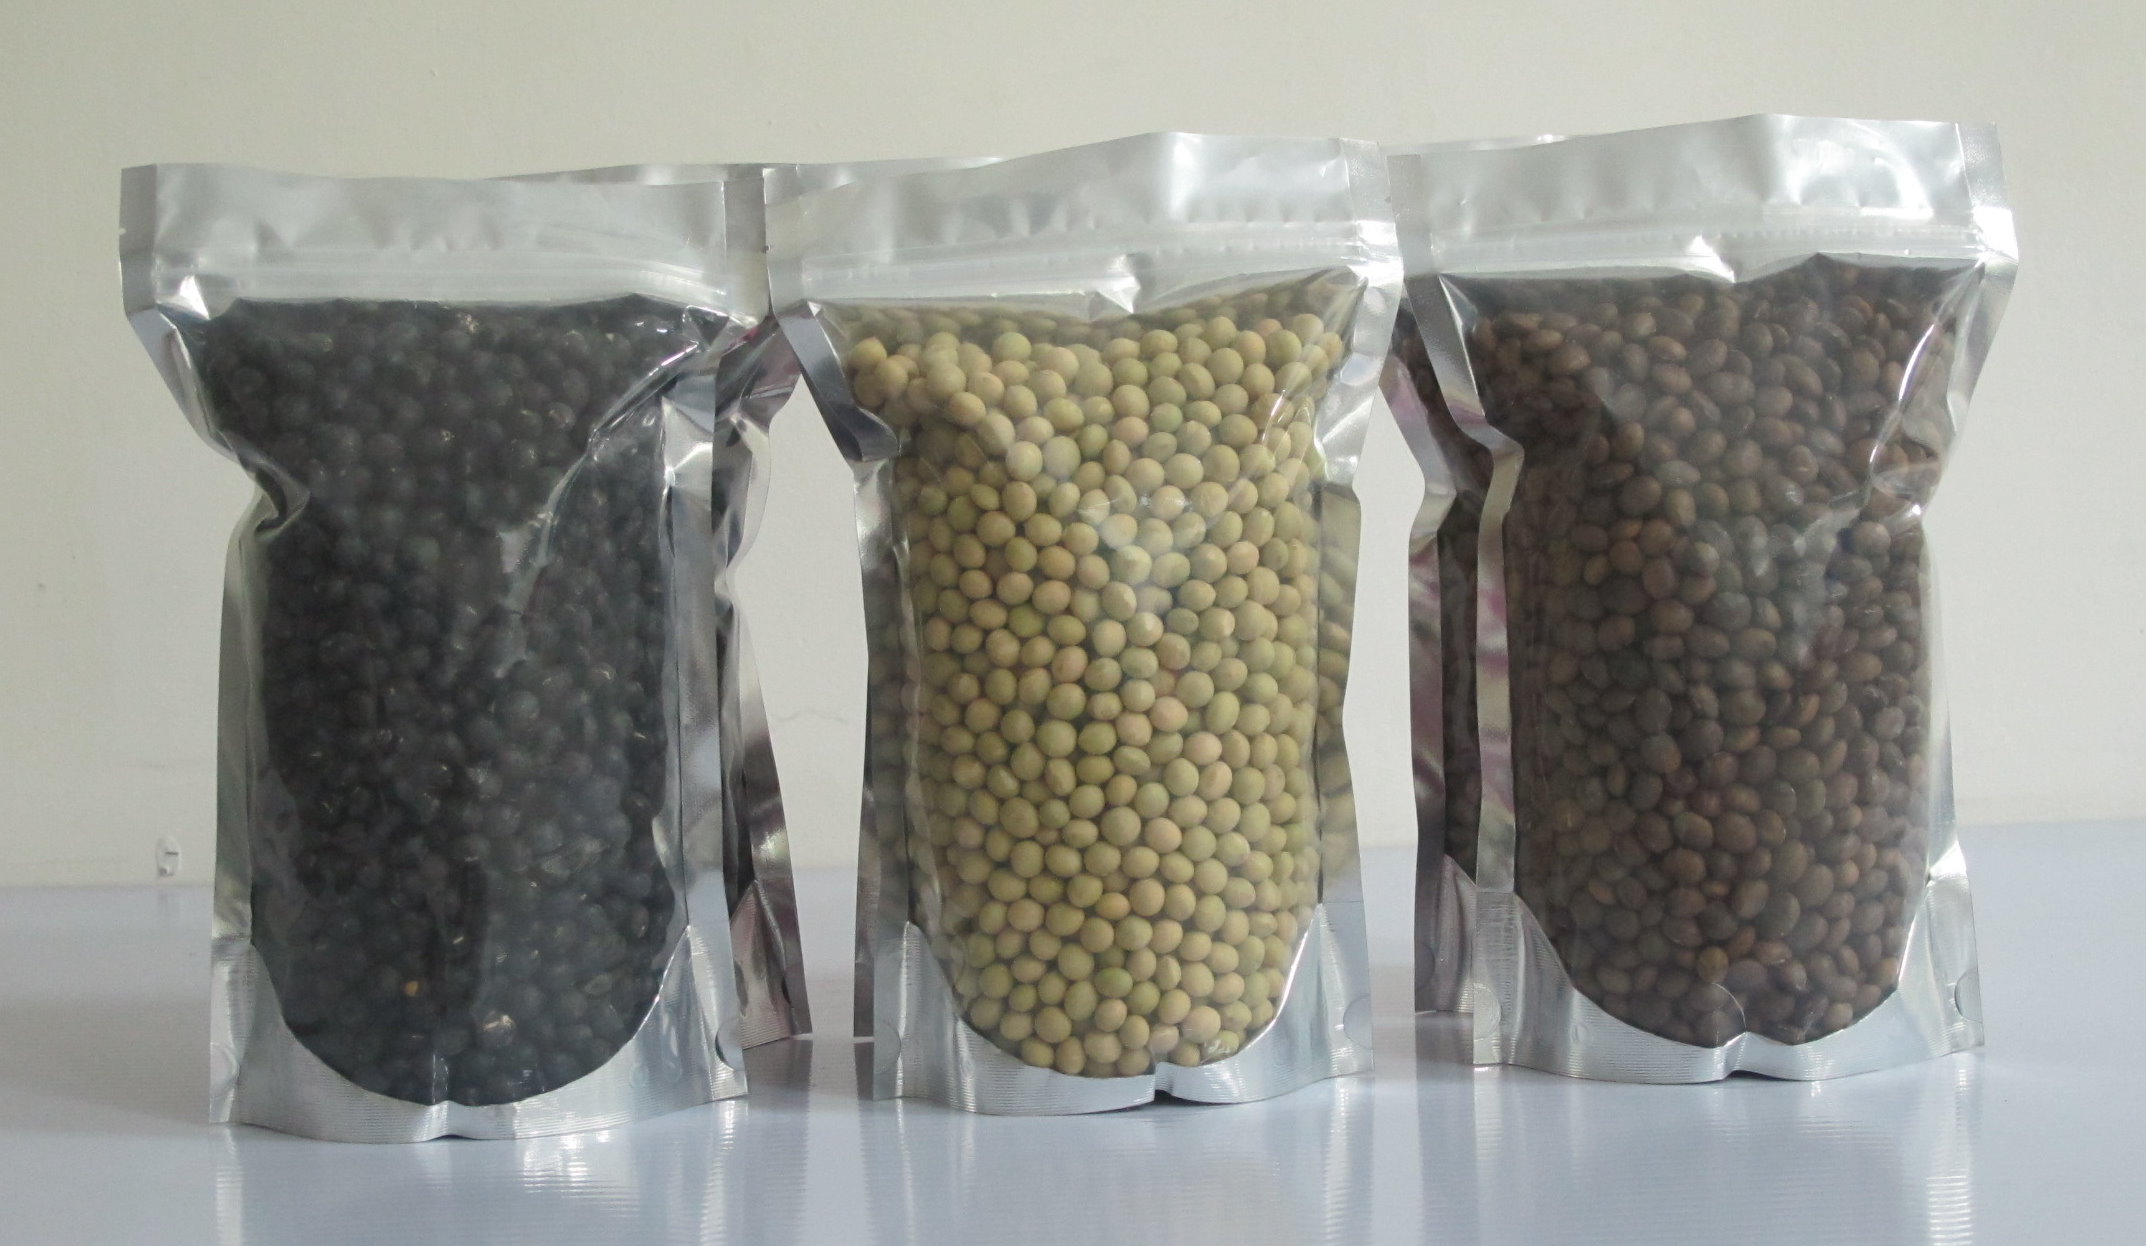 國產大豆多元化品種：高雄7號黑豆(左)、高雄12號黃豆(中)、高雄11號茶豆(右)